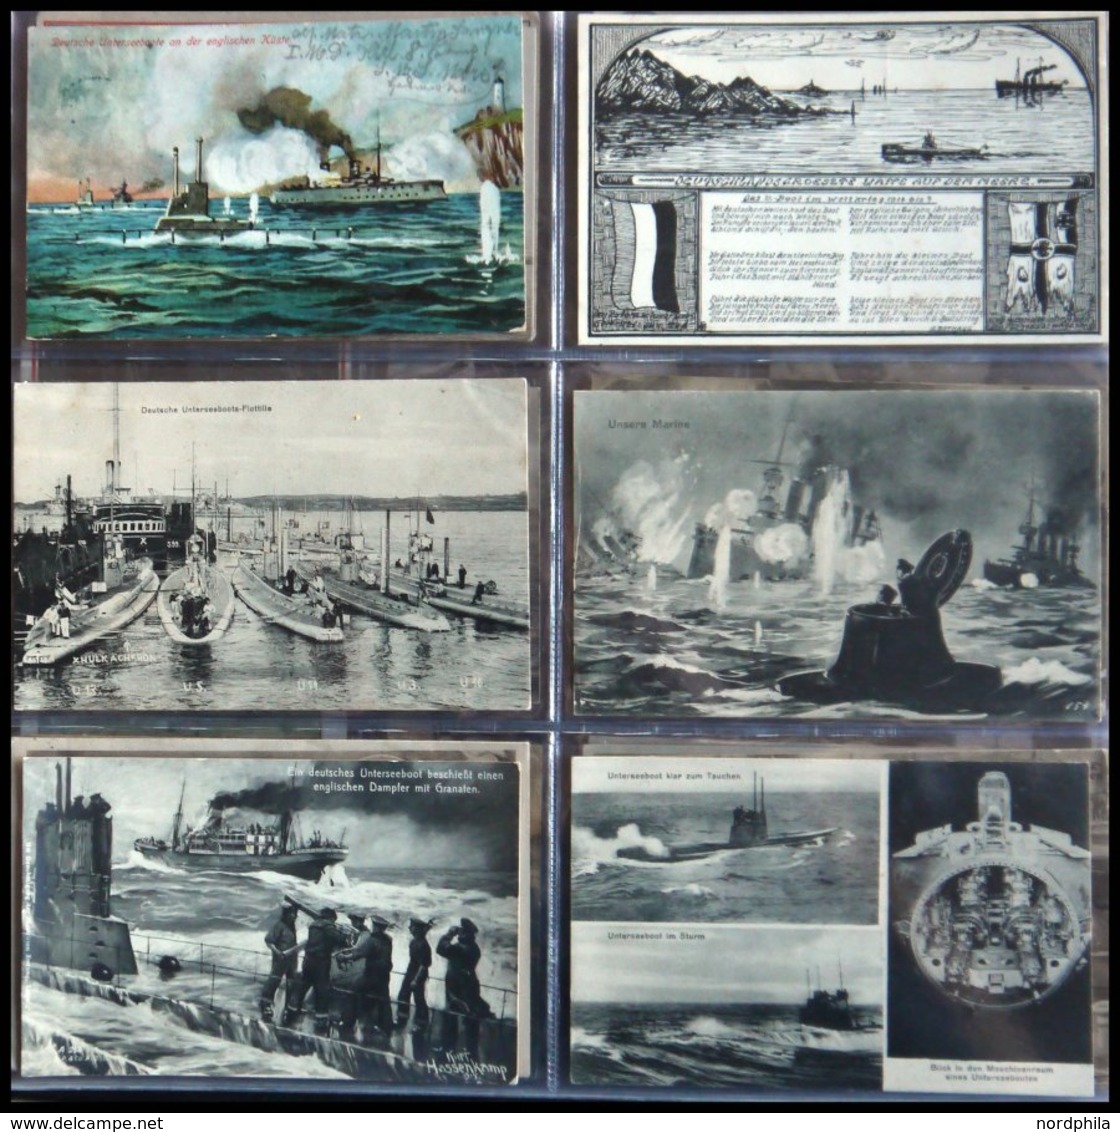 ALTE POSTKARTEN - SCHIFFE KAISERL. MARINE BIS 1918 U-Boote: Sammlung von 96 verschiedenen Ansichtskarten mit U-Boot-Moti